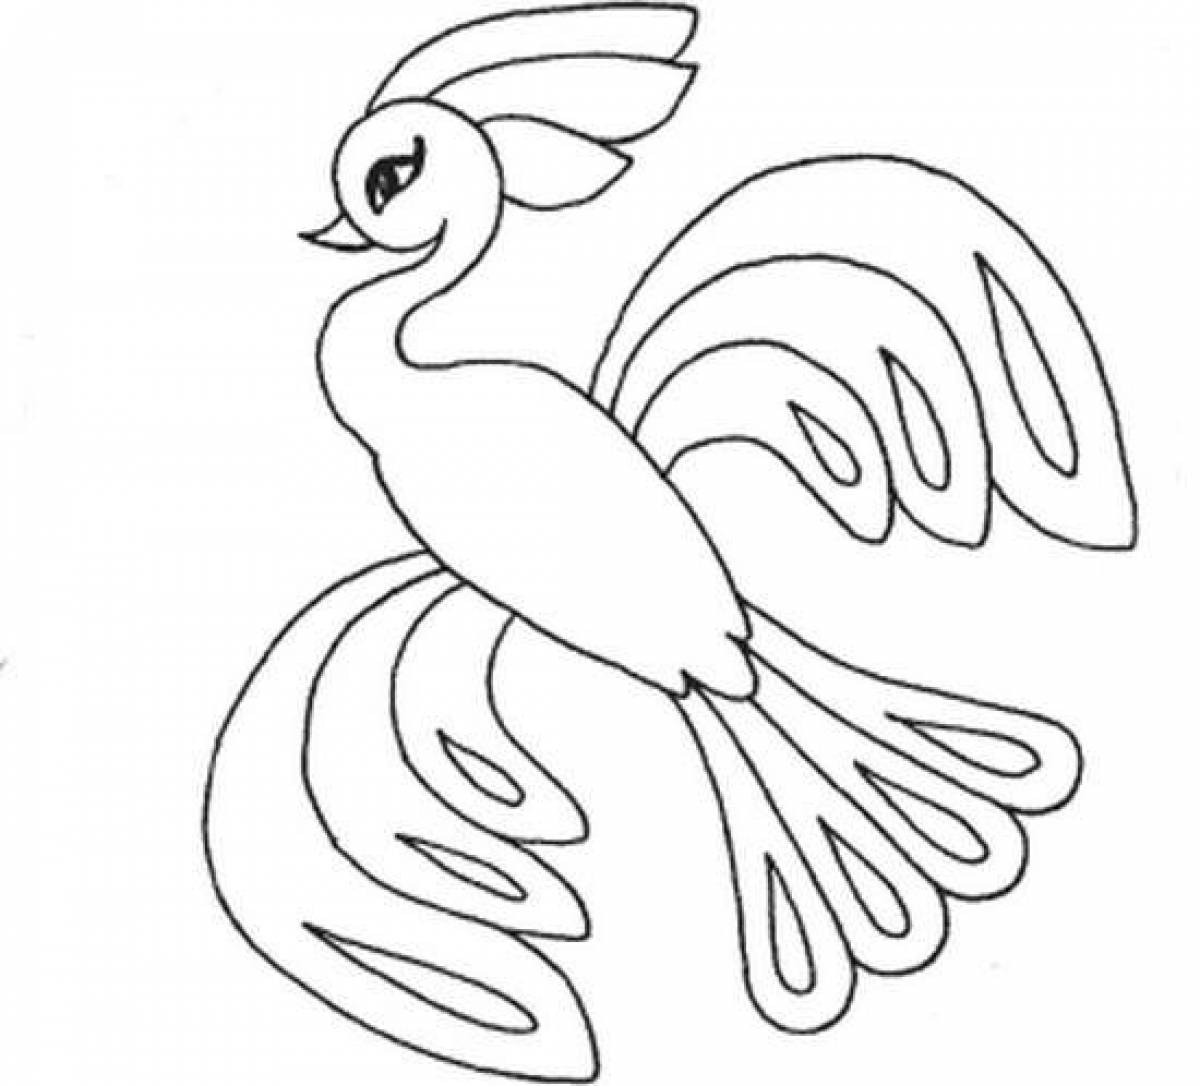 Charming fairy bird coloring book